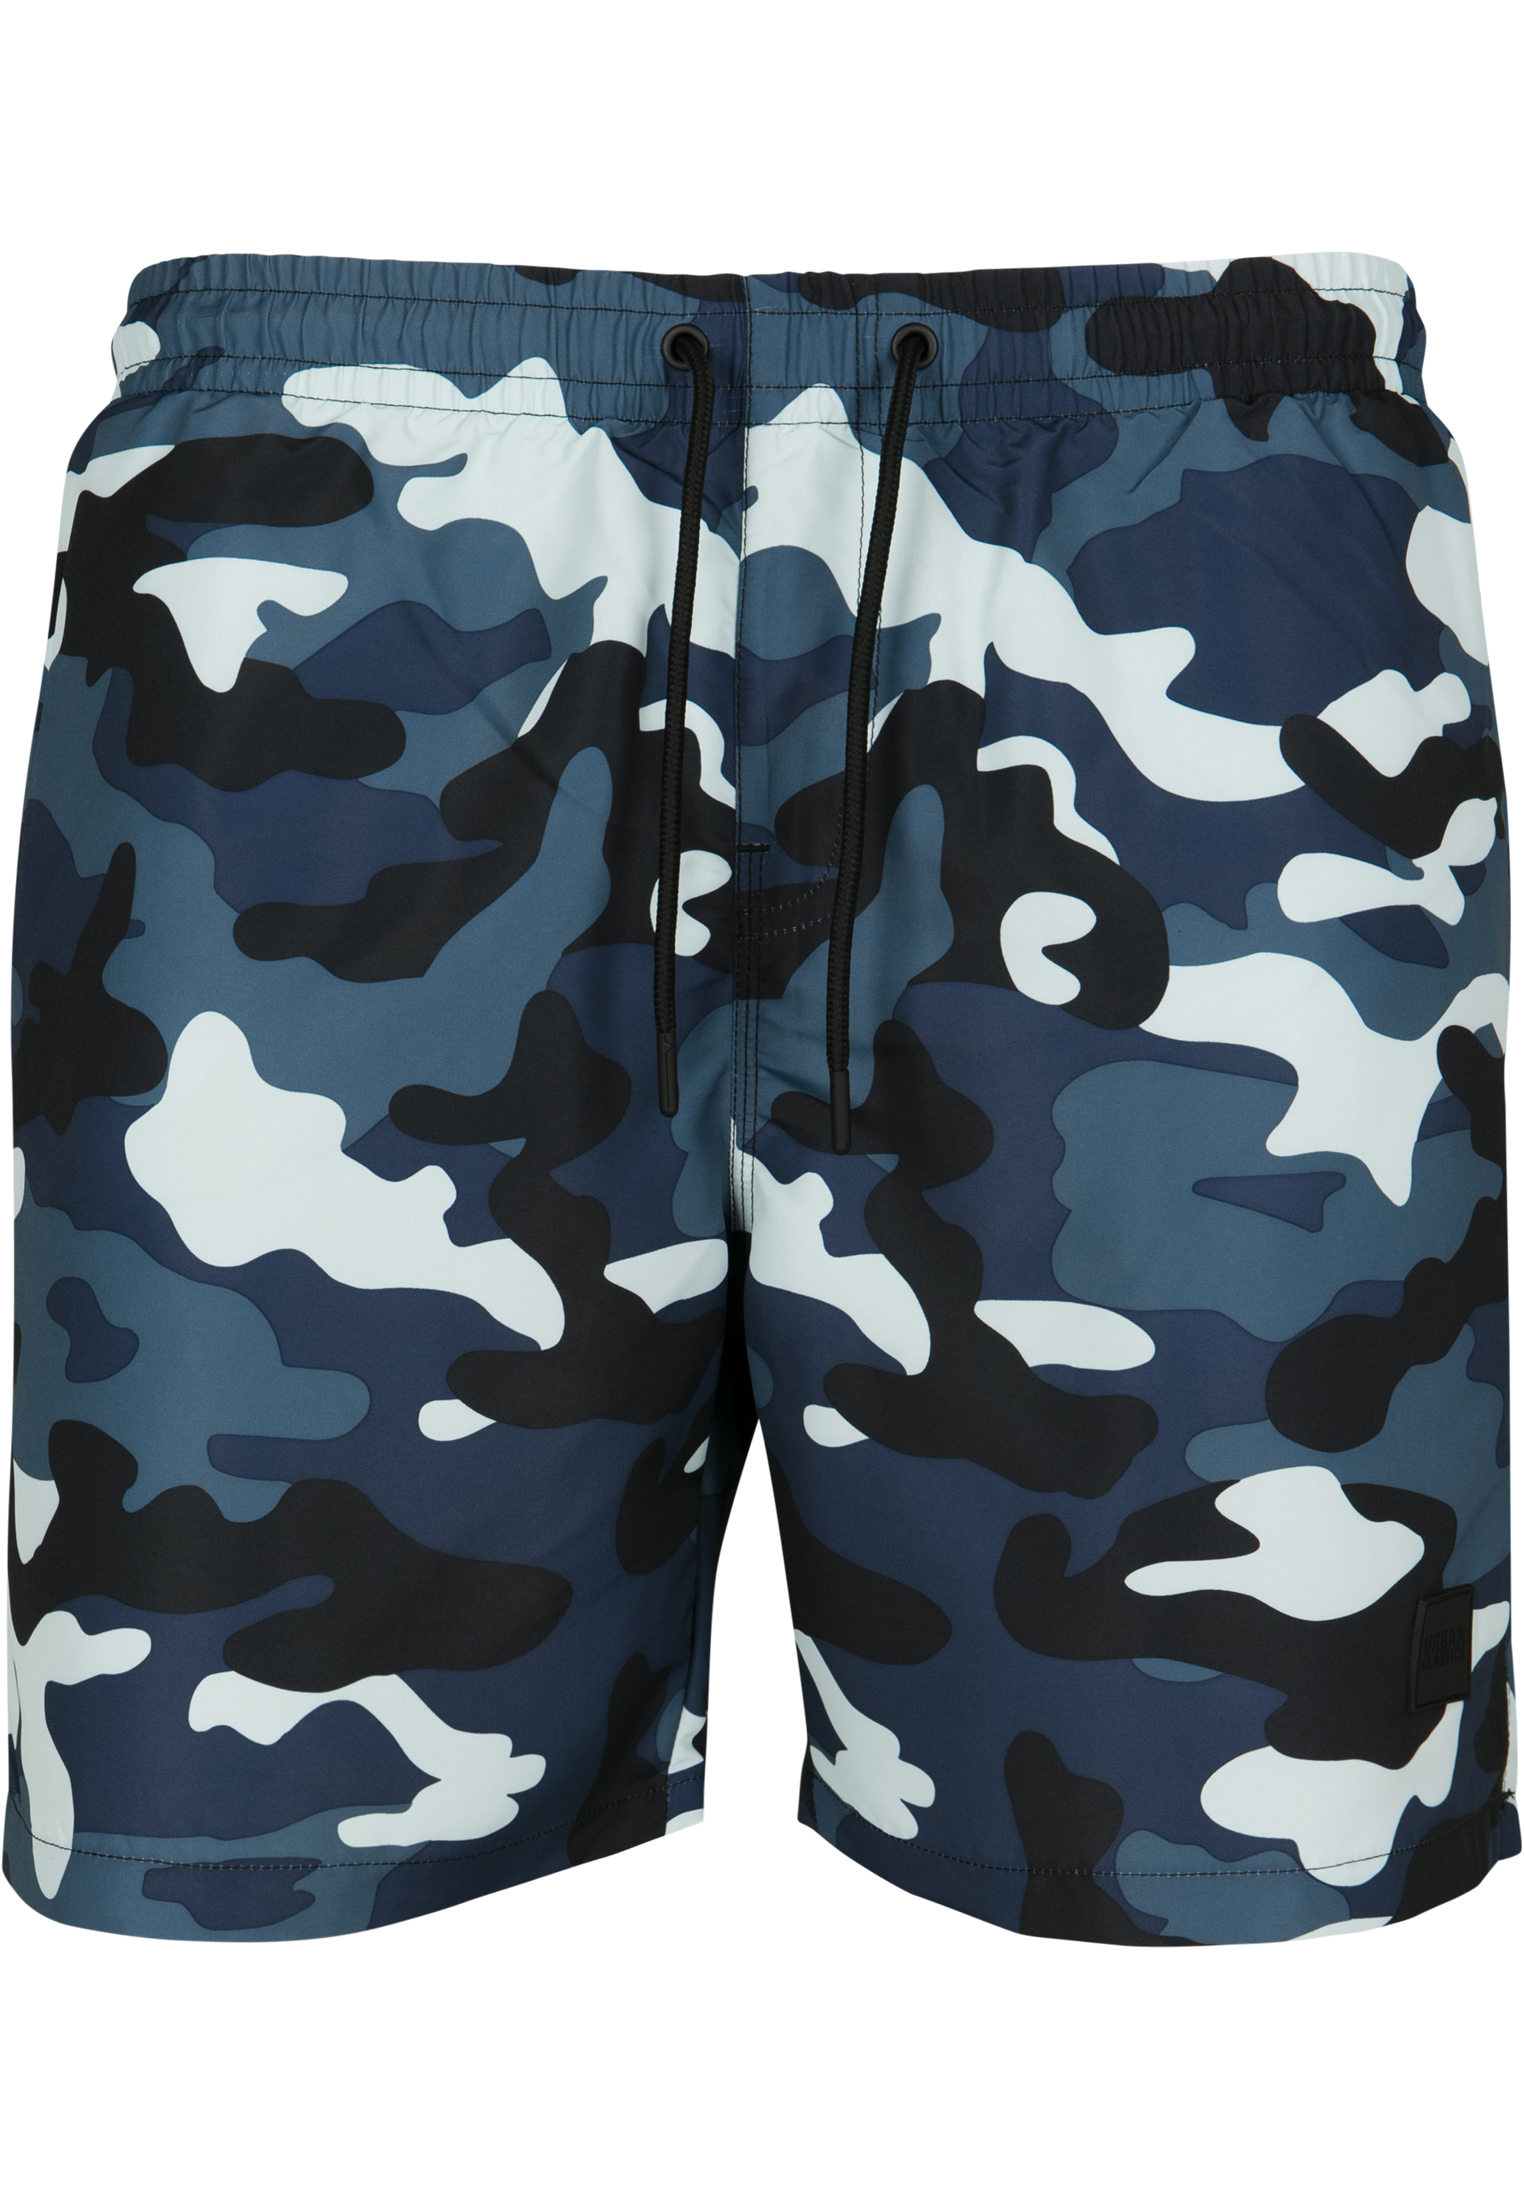 Plus Size Camo Swim Shorts in Farbe blue camo